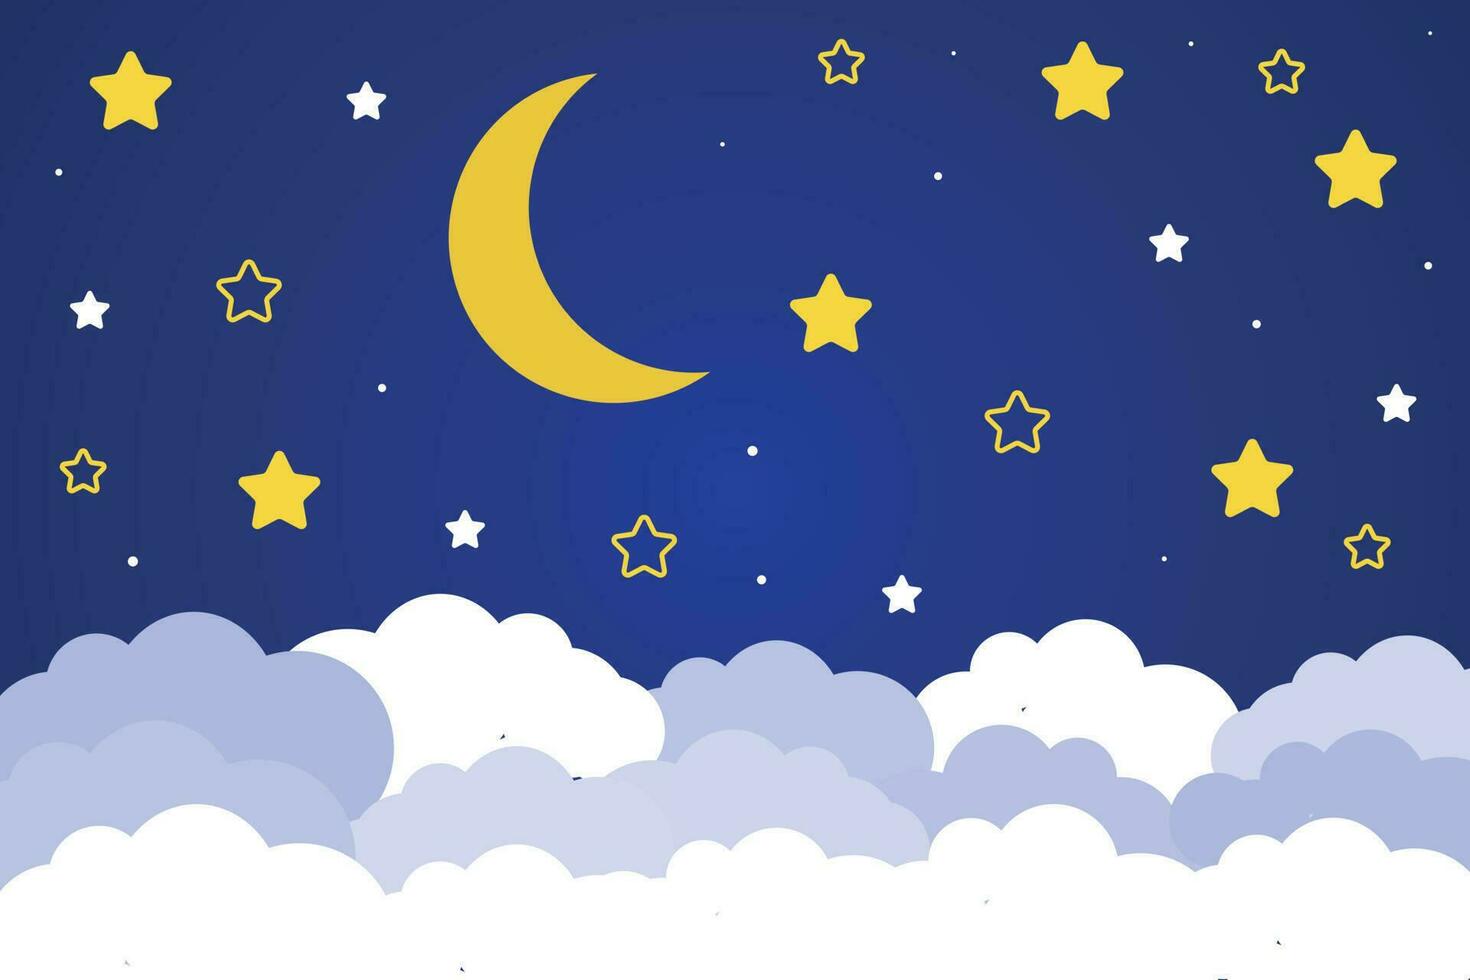 halvmåne måne och stjärnor med moln på en mörk bakgrund av de natt himmel. papper konst. natt scen bakgrund. vektor